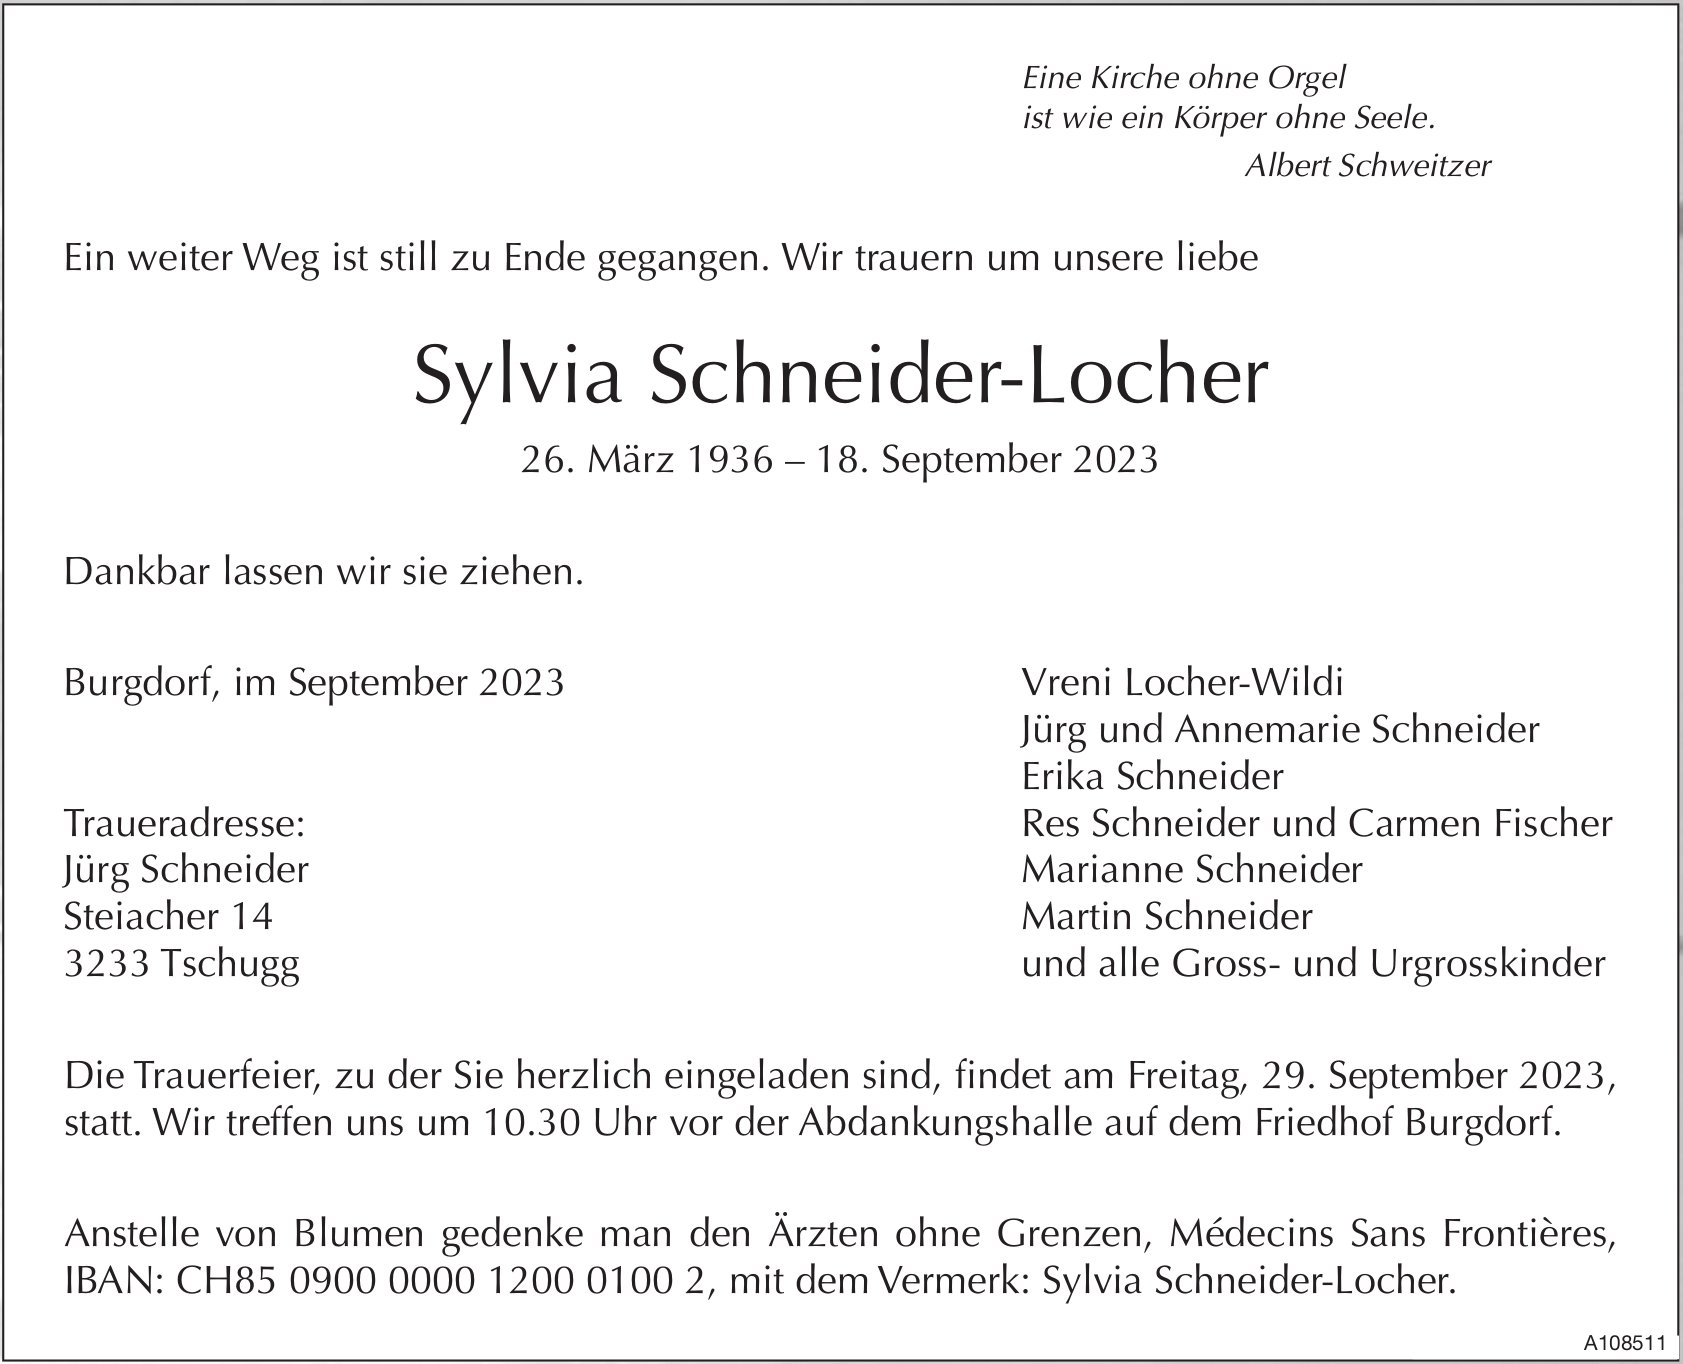 Sylvia Schneider-Locher, September 2023 / TA